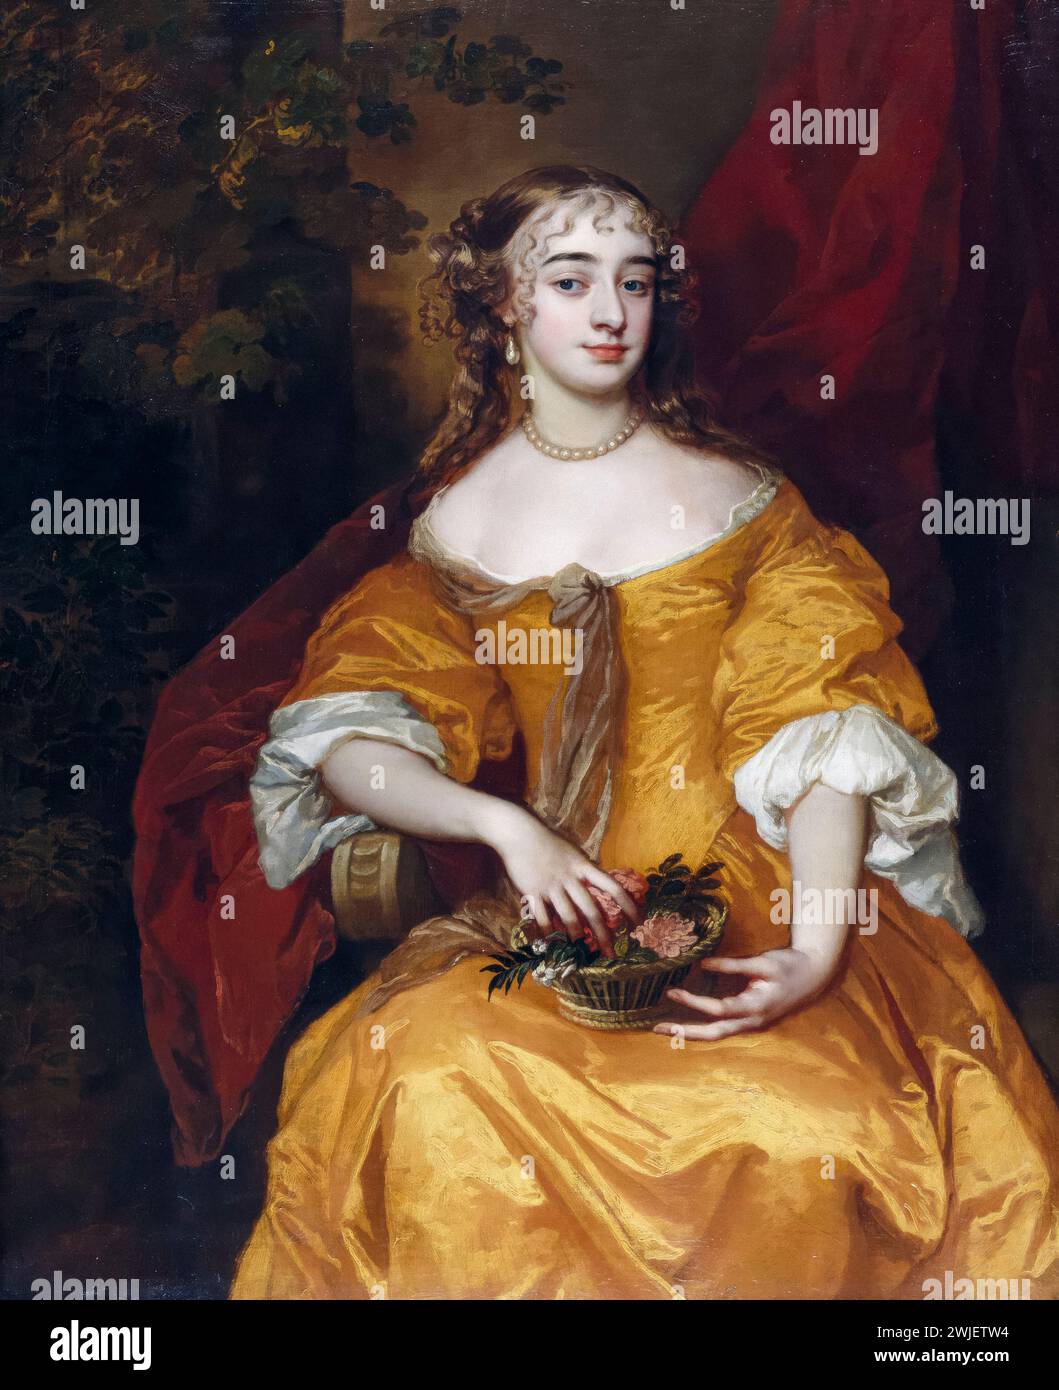 Margaret, Lady Denham (circa 1642-1667), cortesana inglesa y amante del rey Jaime II de Inglaterra, pintura de retrato al óleo sobre lienzo de Sir Peter Lely, 1663-1665 Foto de stock